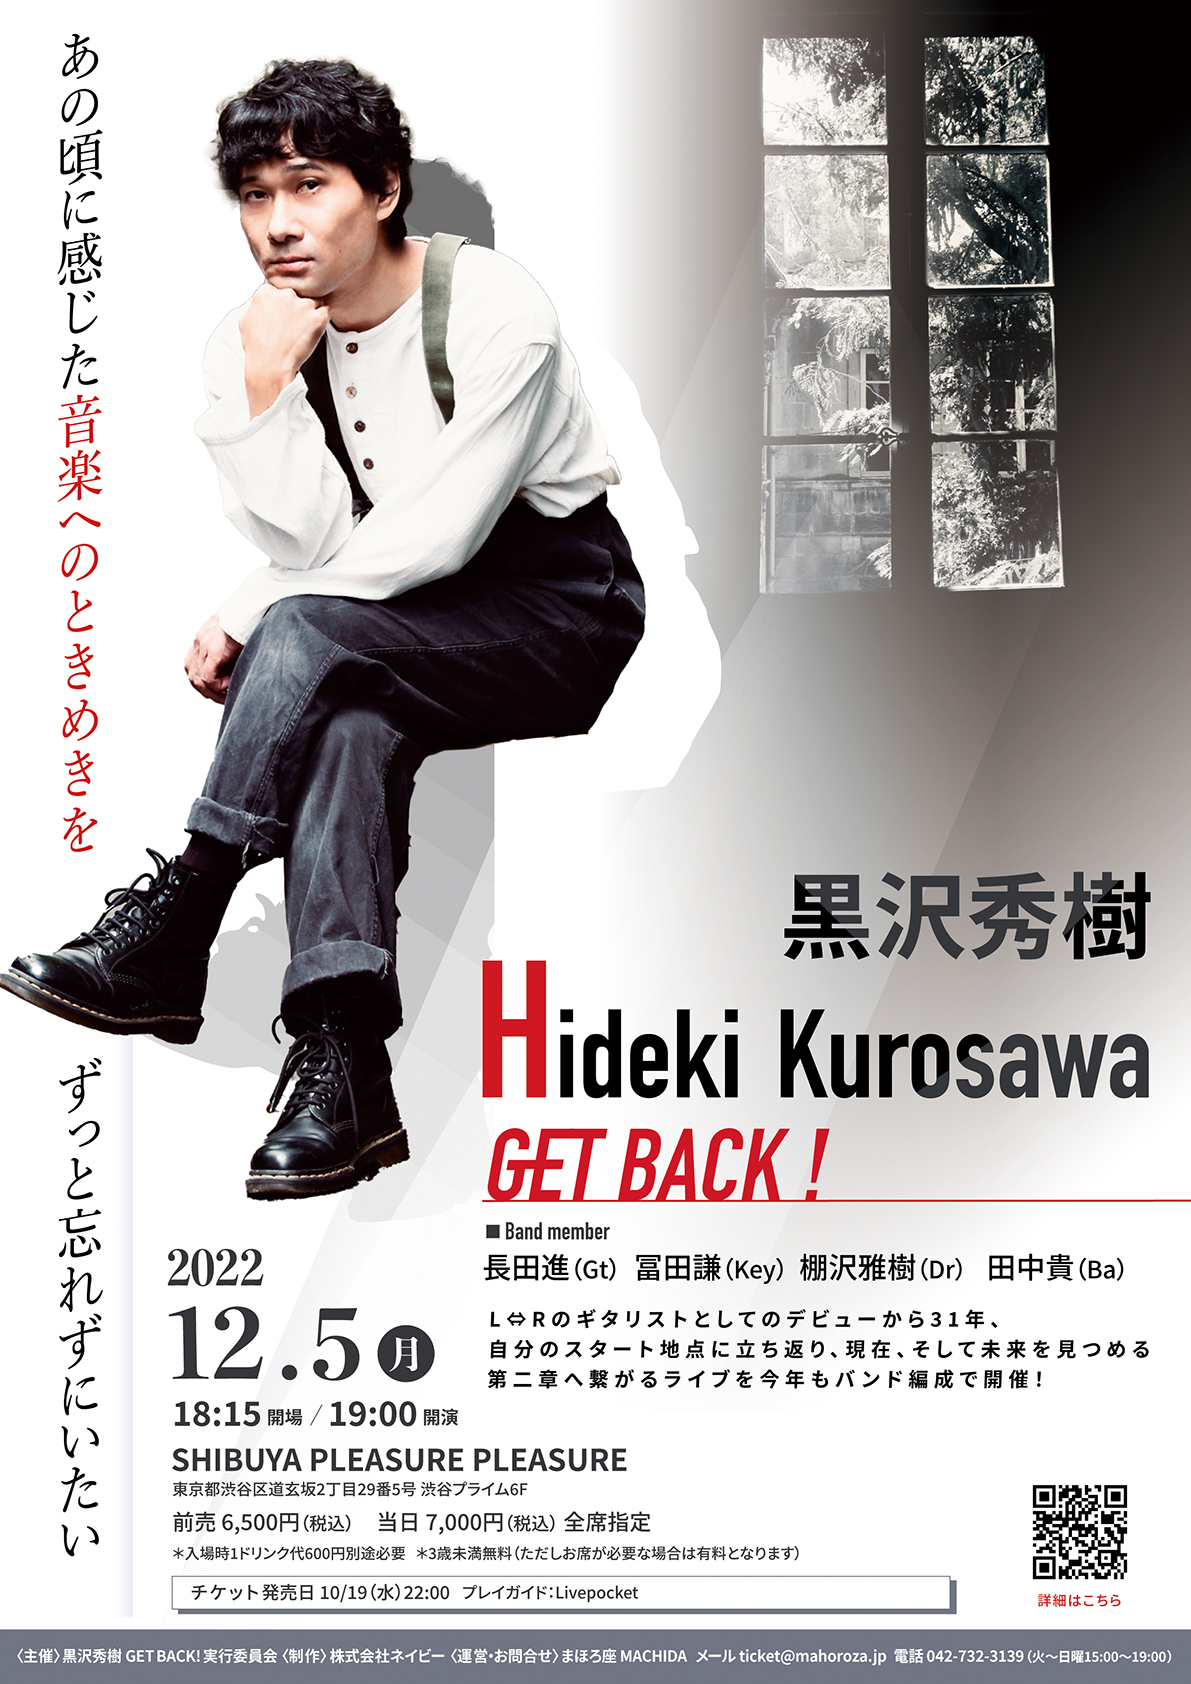 L⇔R黒沢秀樹のライブが実兄・黒沢健一の命日12月5日に渋谷で開催